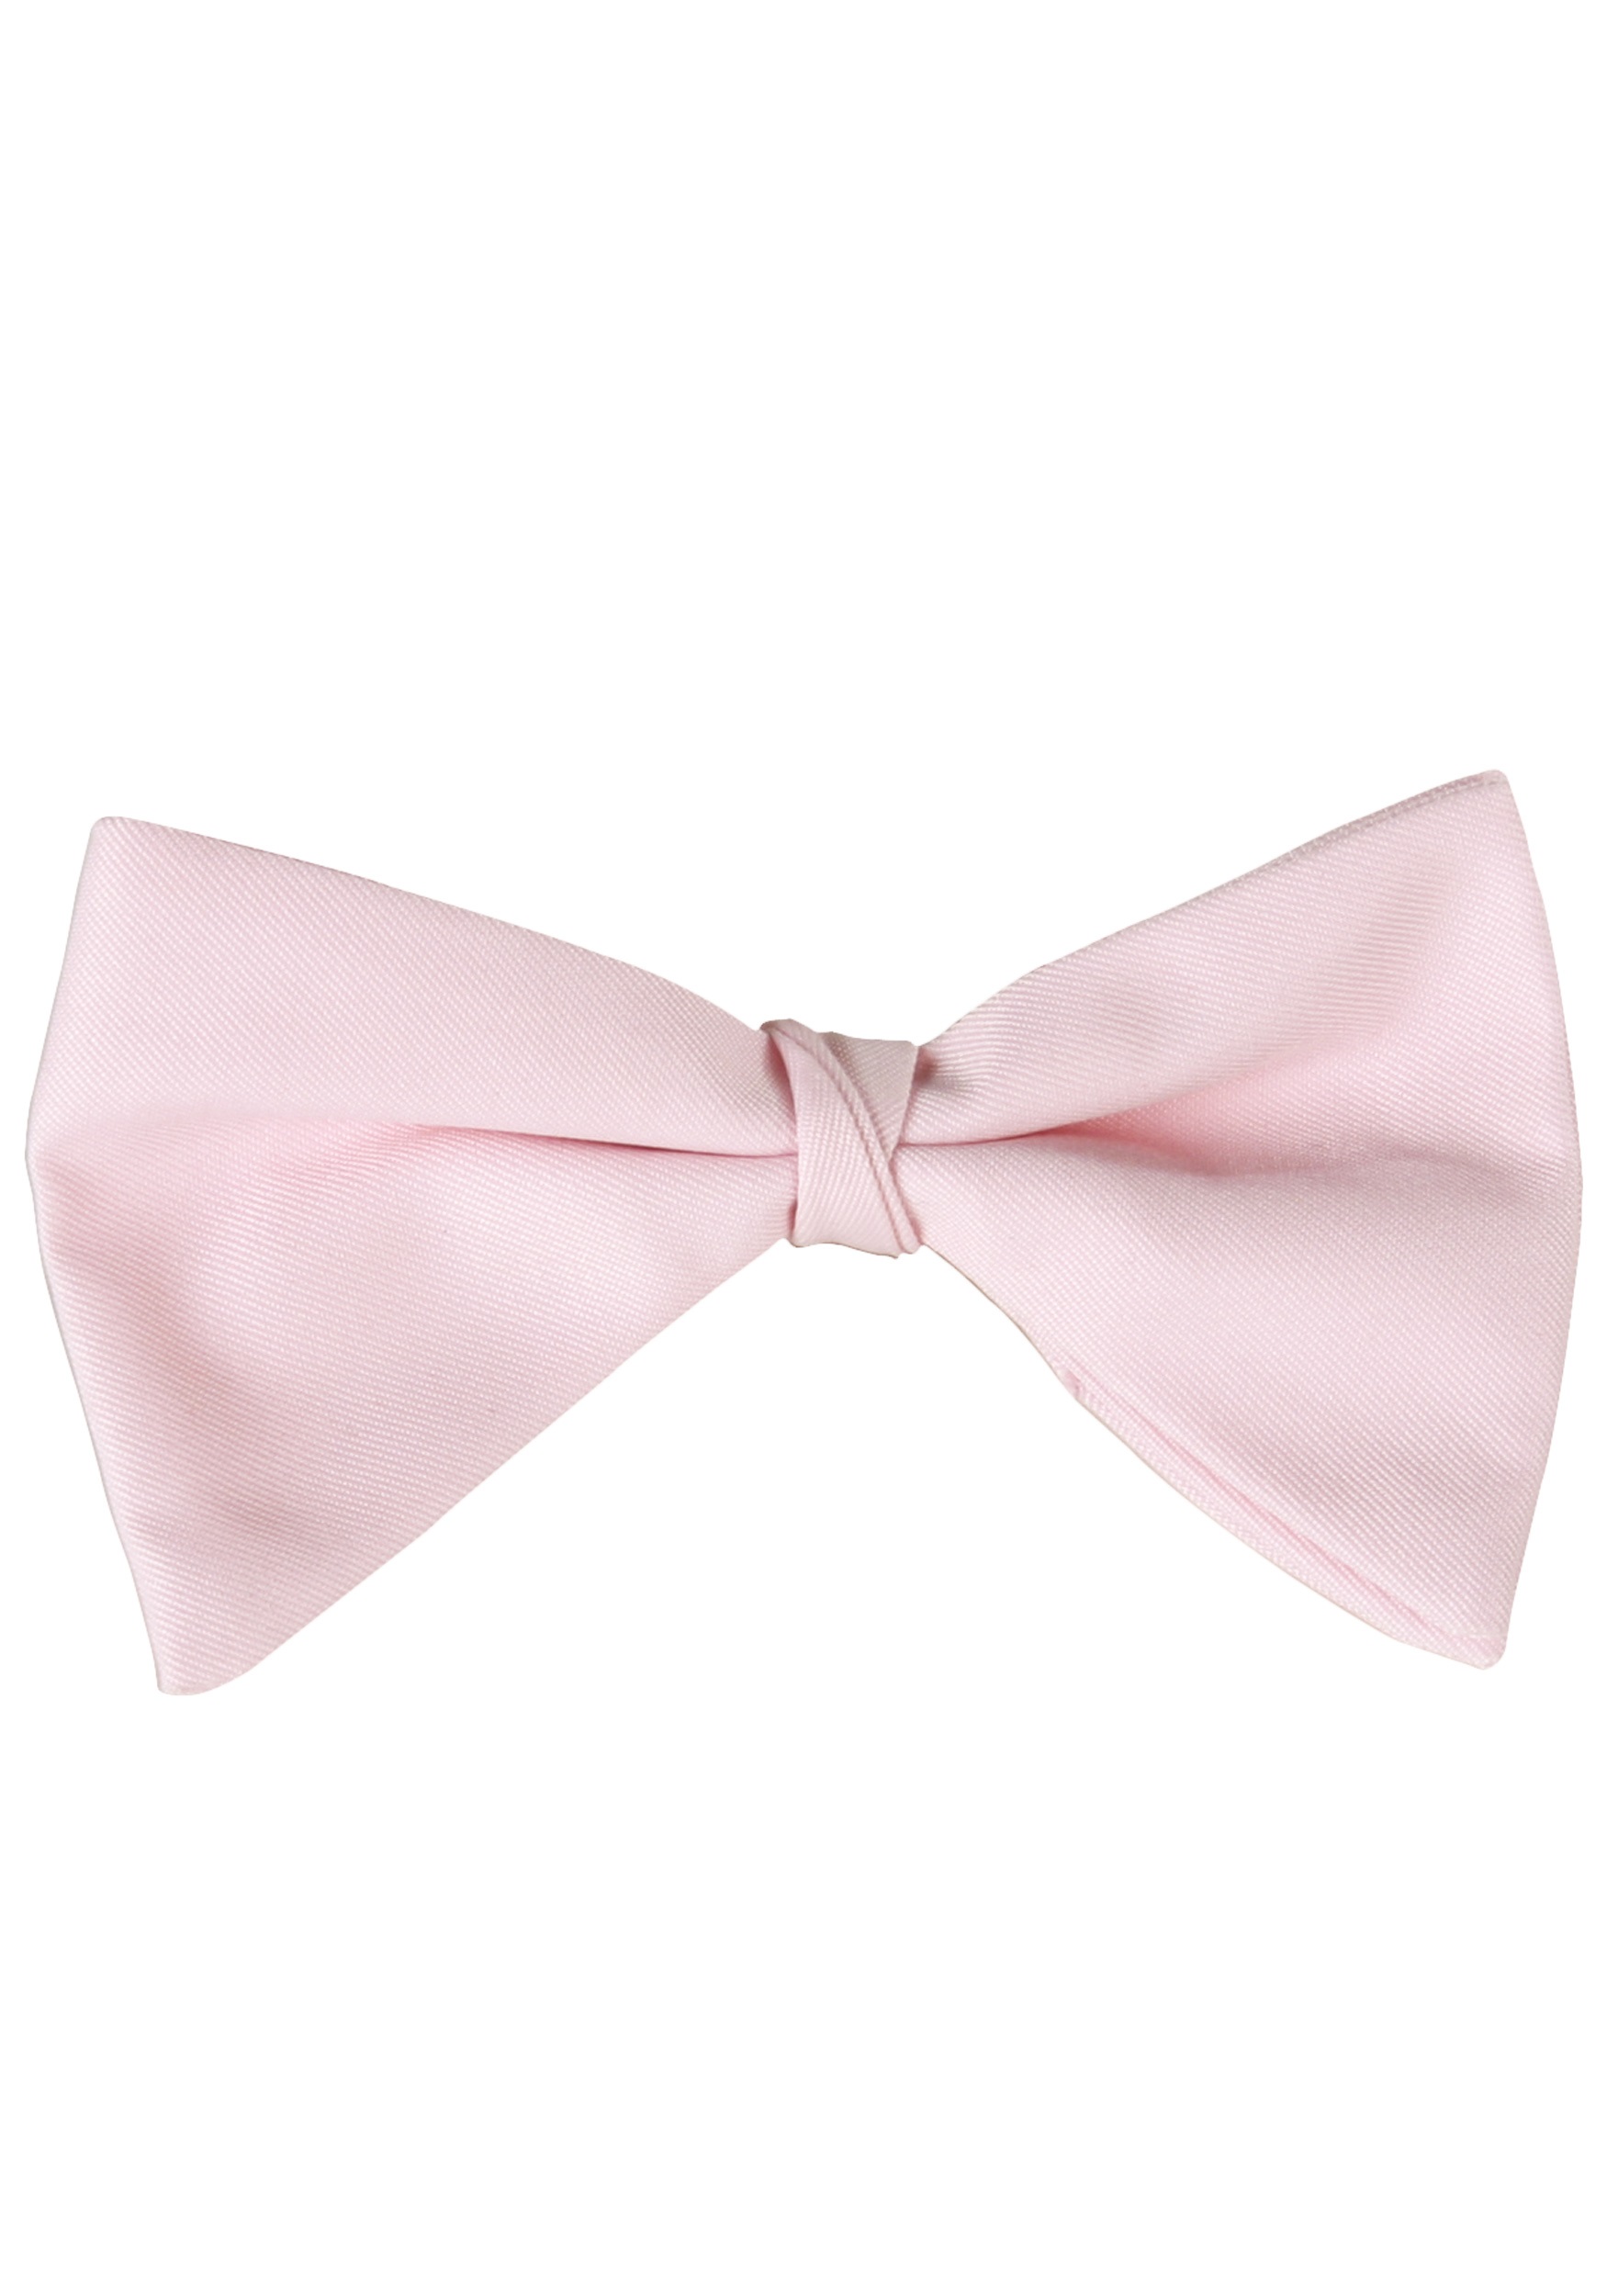 Pink Tuxedo Bow Tie